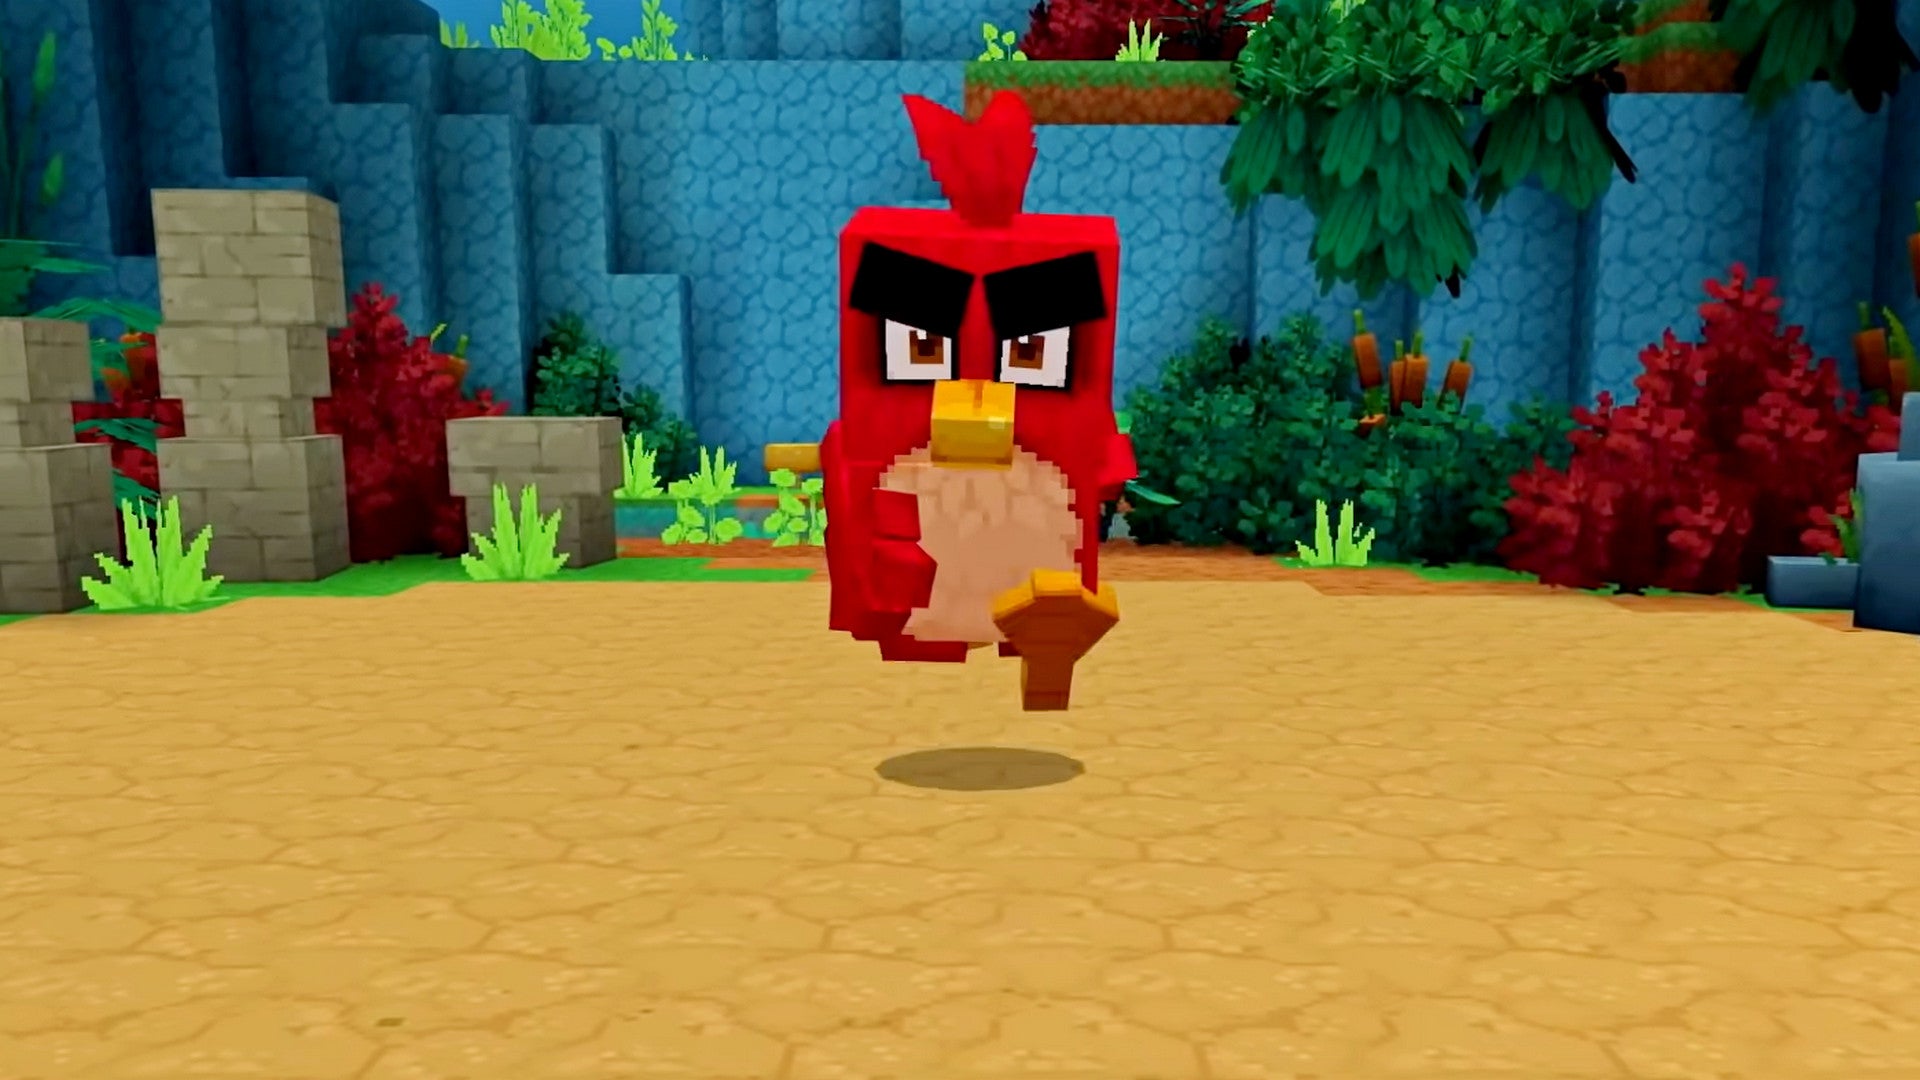 Bilder zu Minecraft: Angry Birds treffen im neuen DLC ein